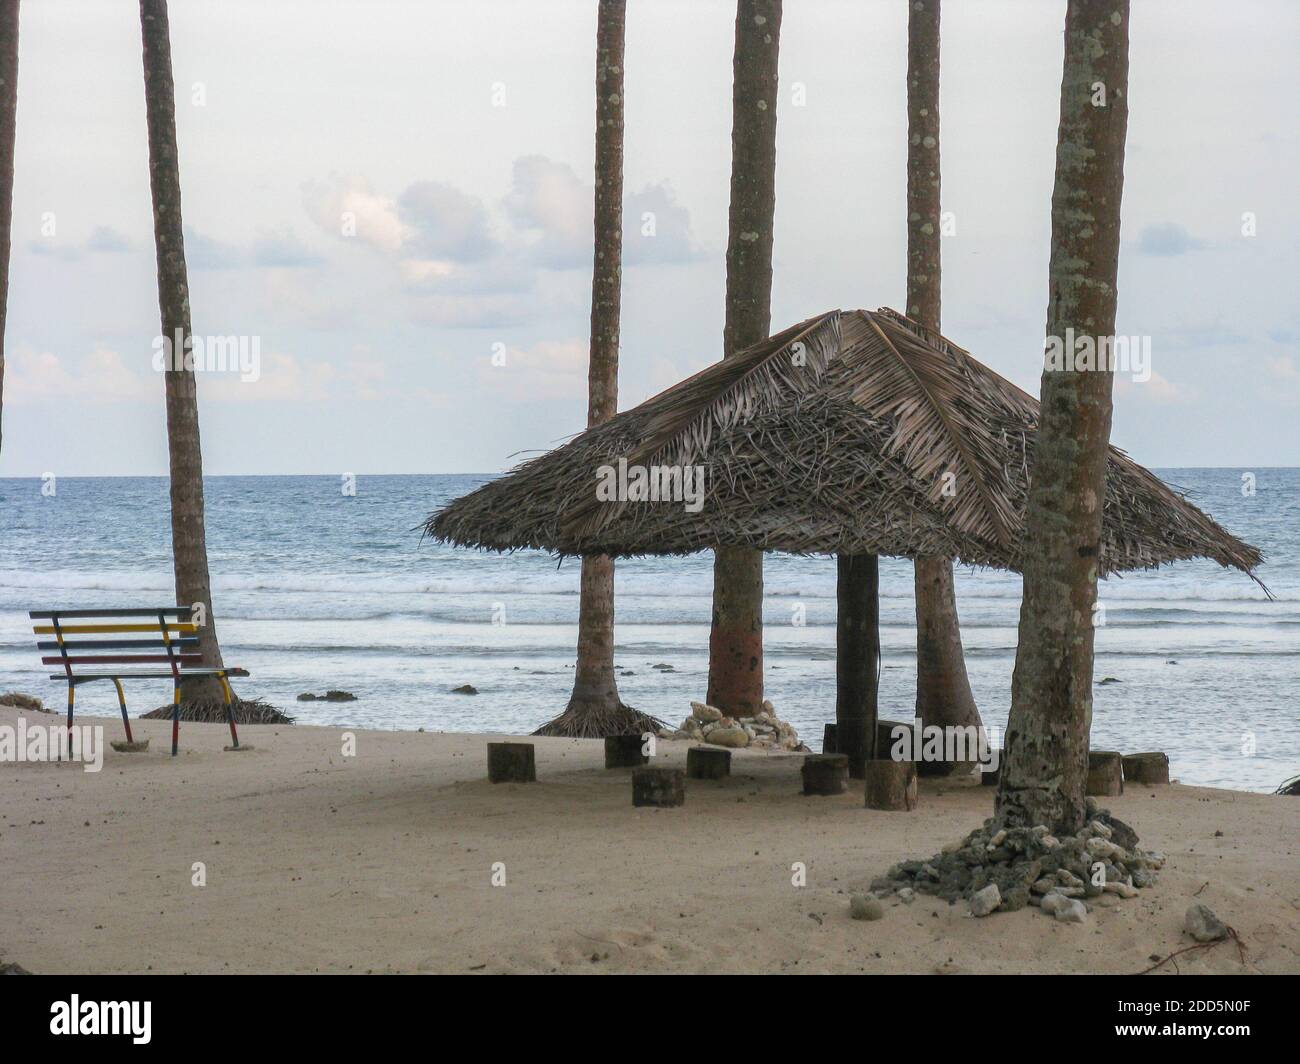 Image de silhouette d'un abat-jour en chaume avec un banc à Asseyez-vous sur une plage à Port Blair à Andaman et Îles Nicobar Inde Banque D'Images